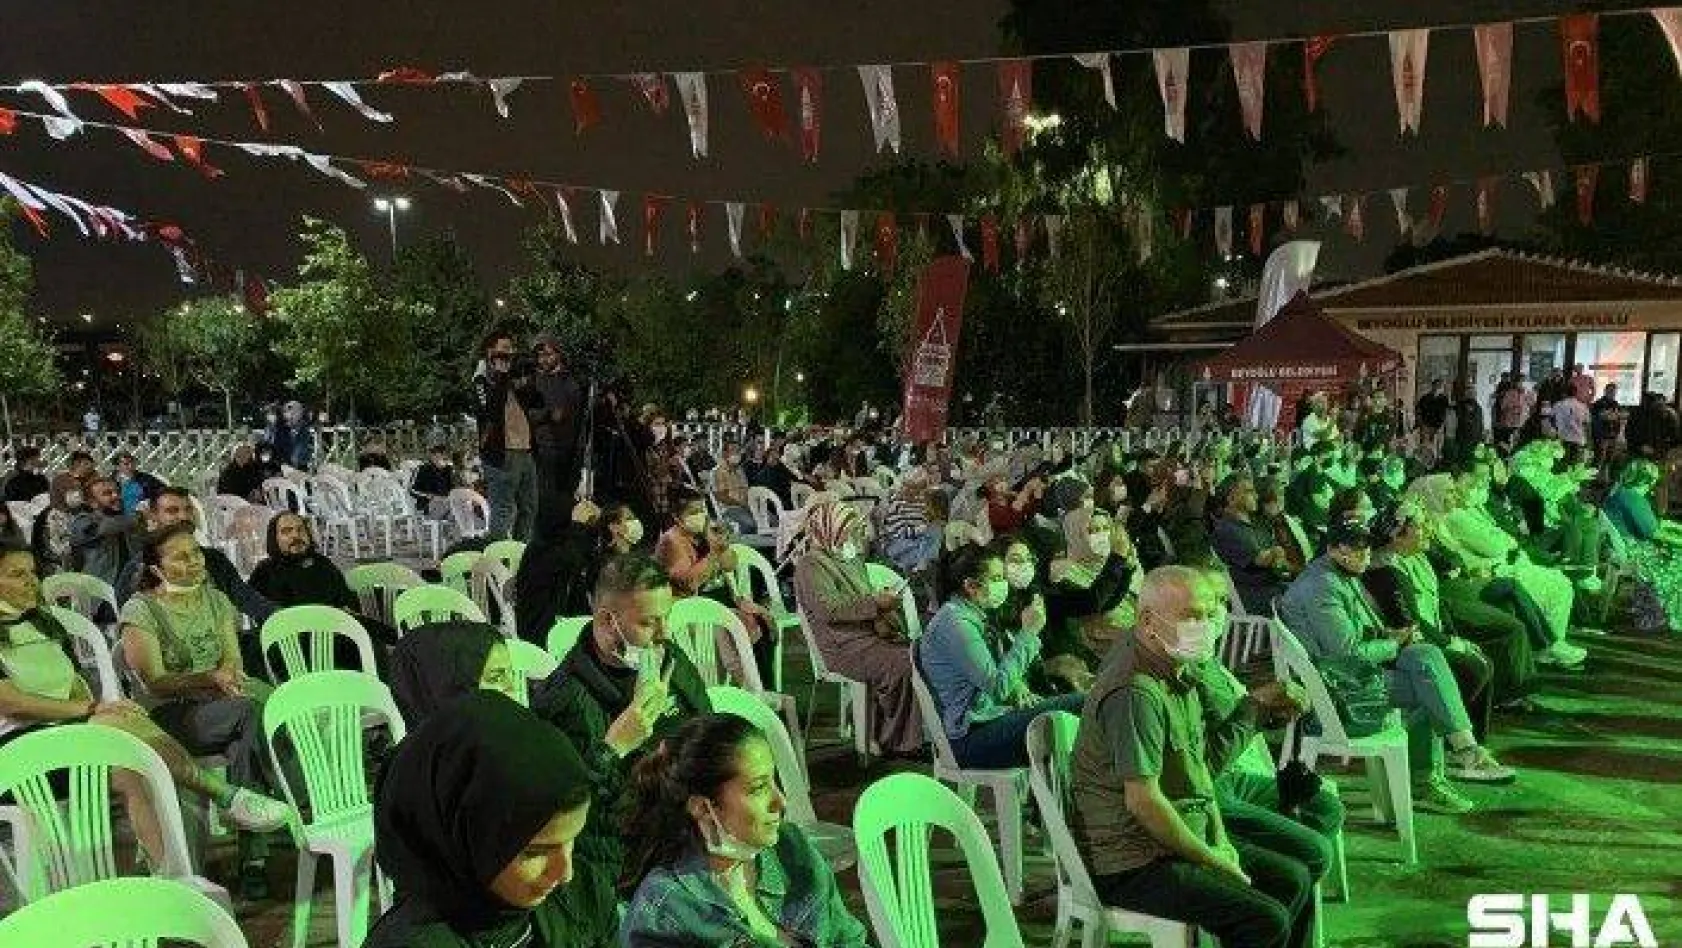 Beyoğlu Hasköy Sahne'de sıra gecesi